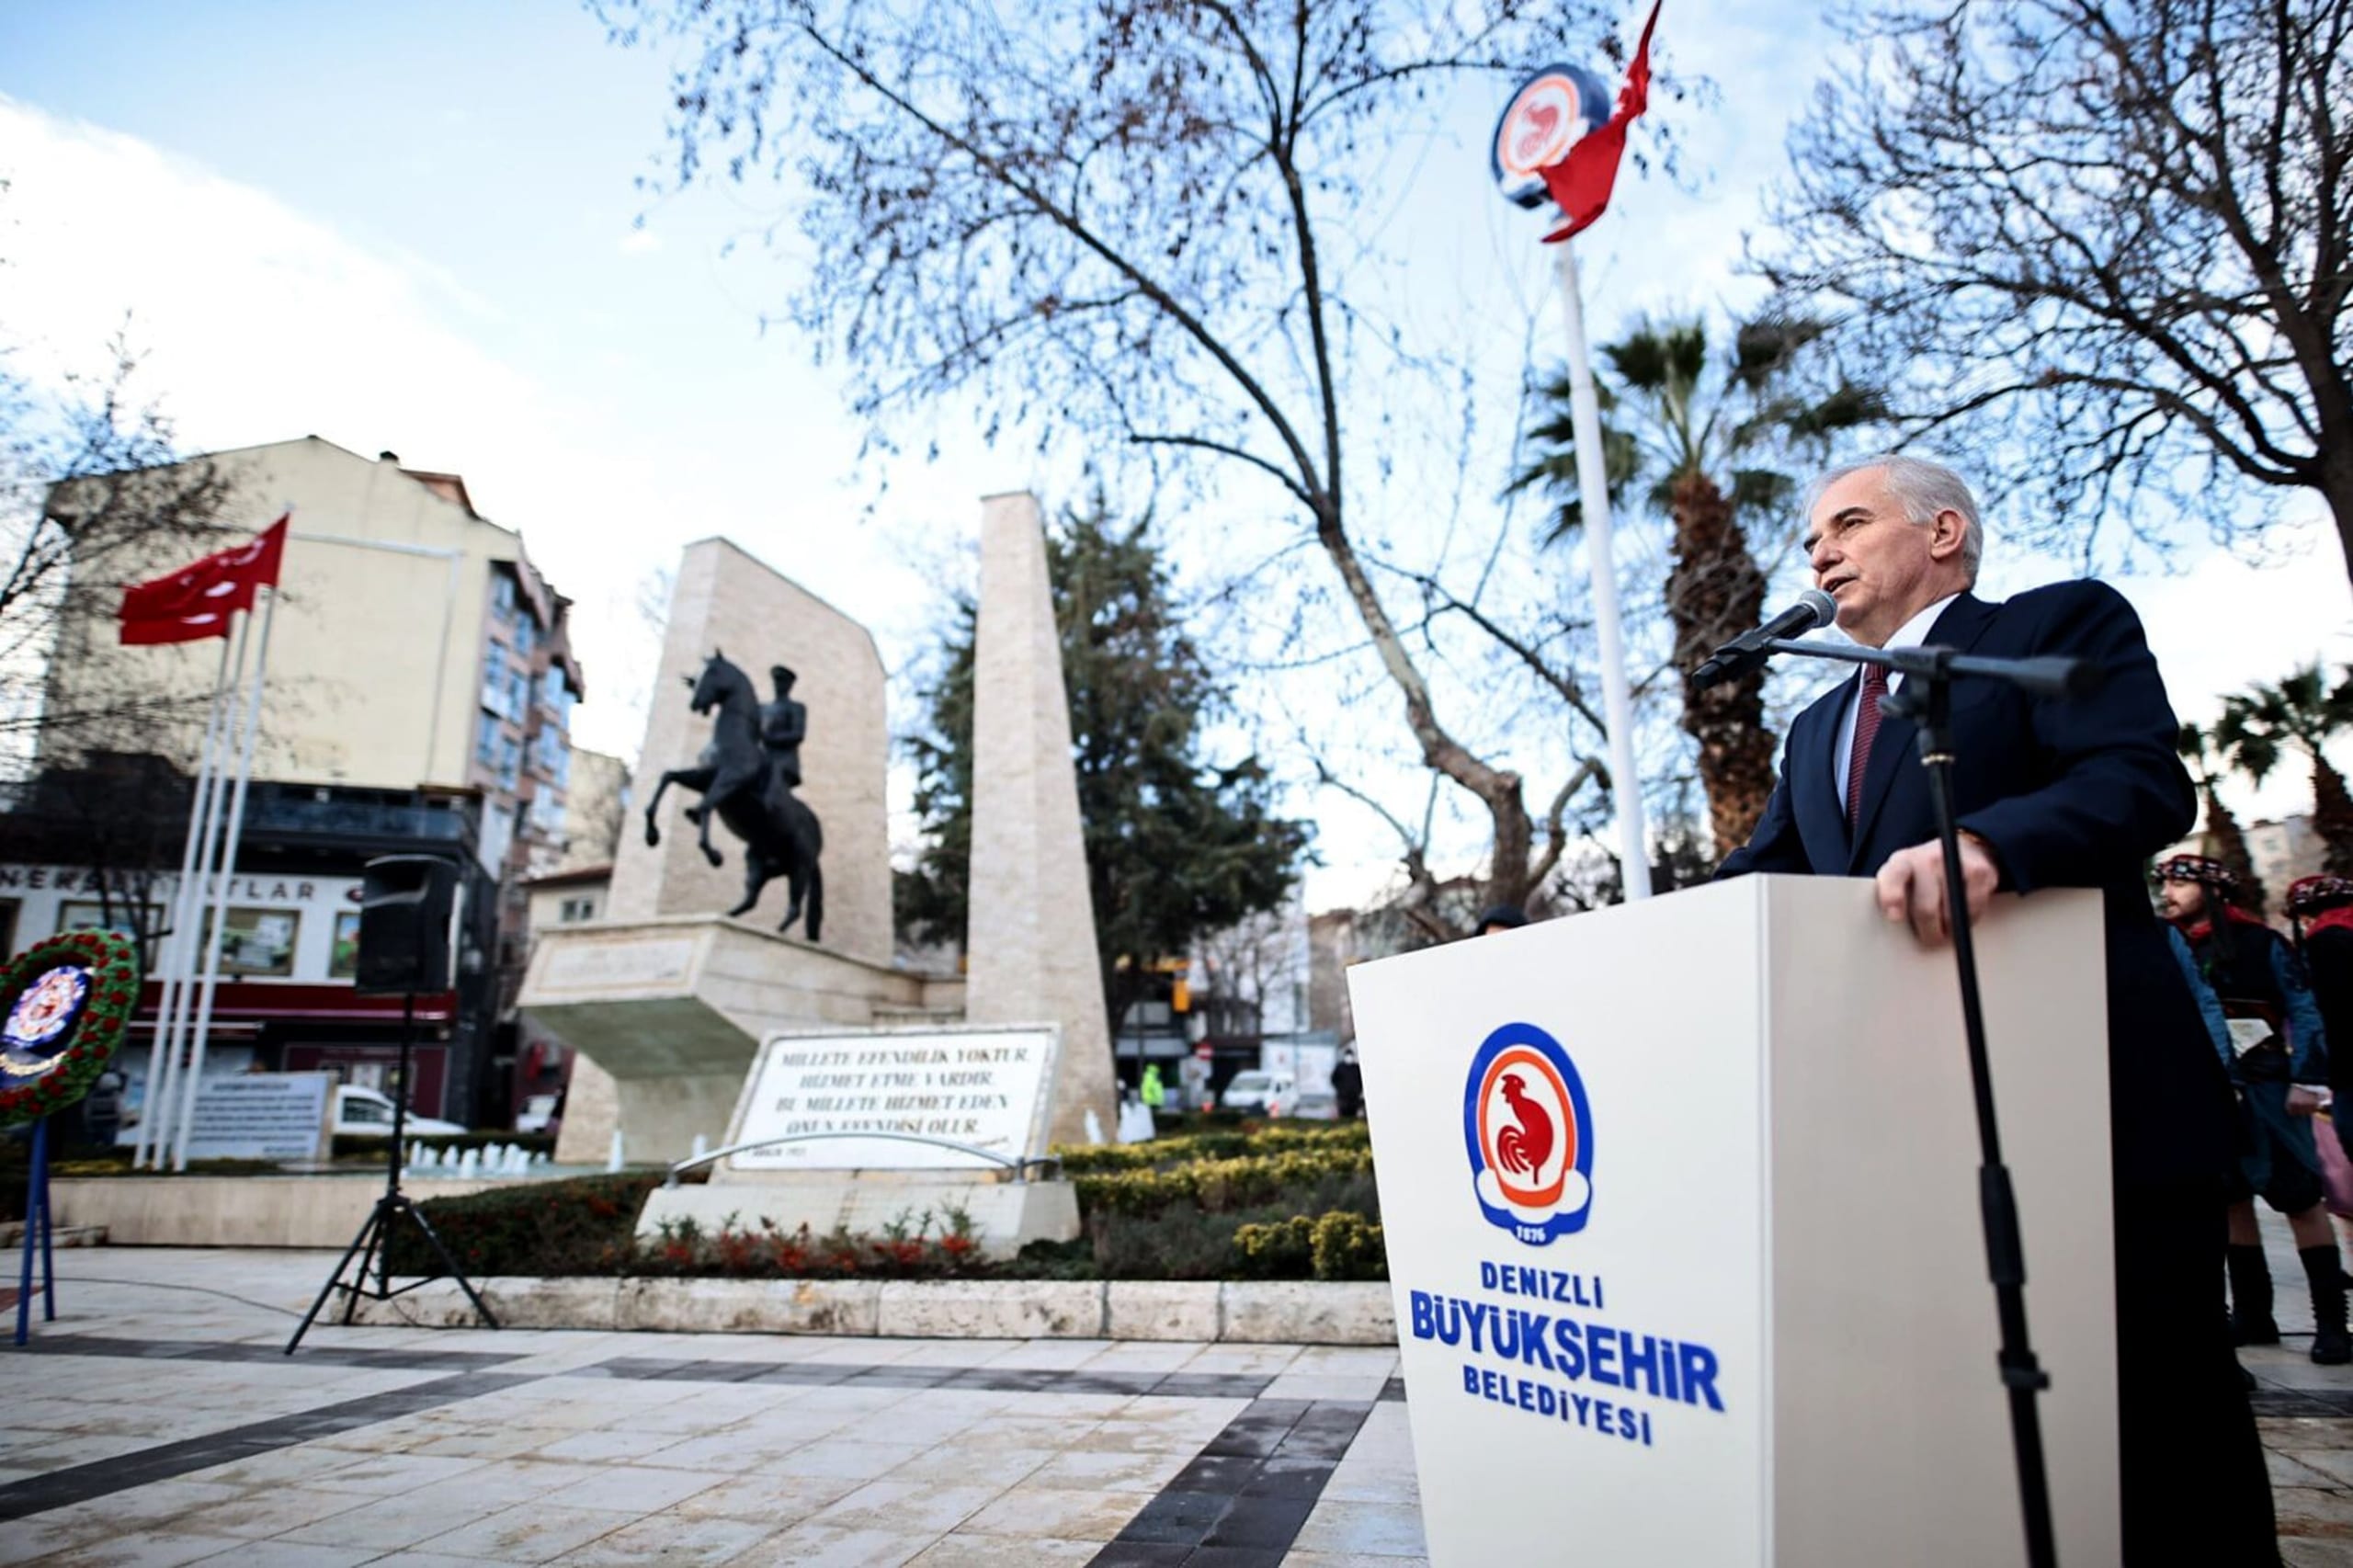 Denizli Buyuksehir Belediye Baskani Osman Zolan 2 scaled - Atatürk'ün Denizli'ye Gelişinin 91.Yıldönümü Anıldı